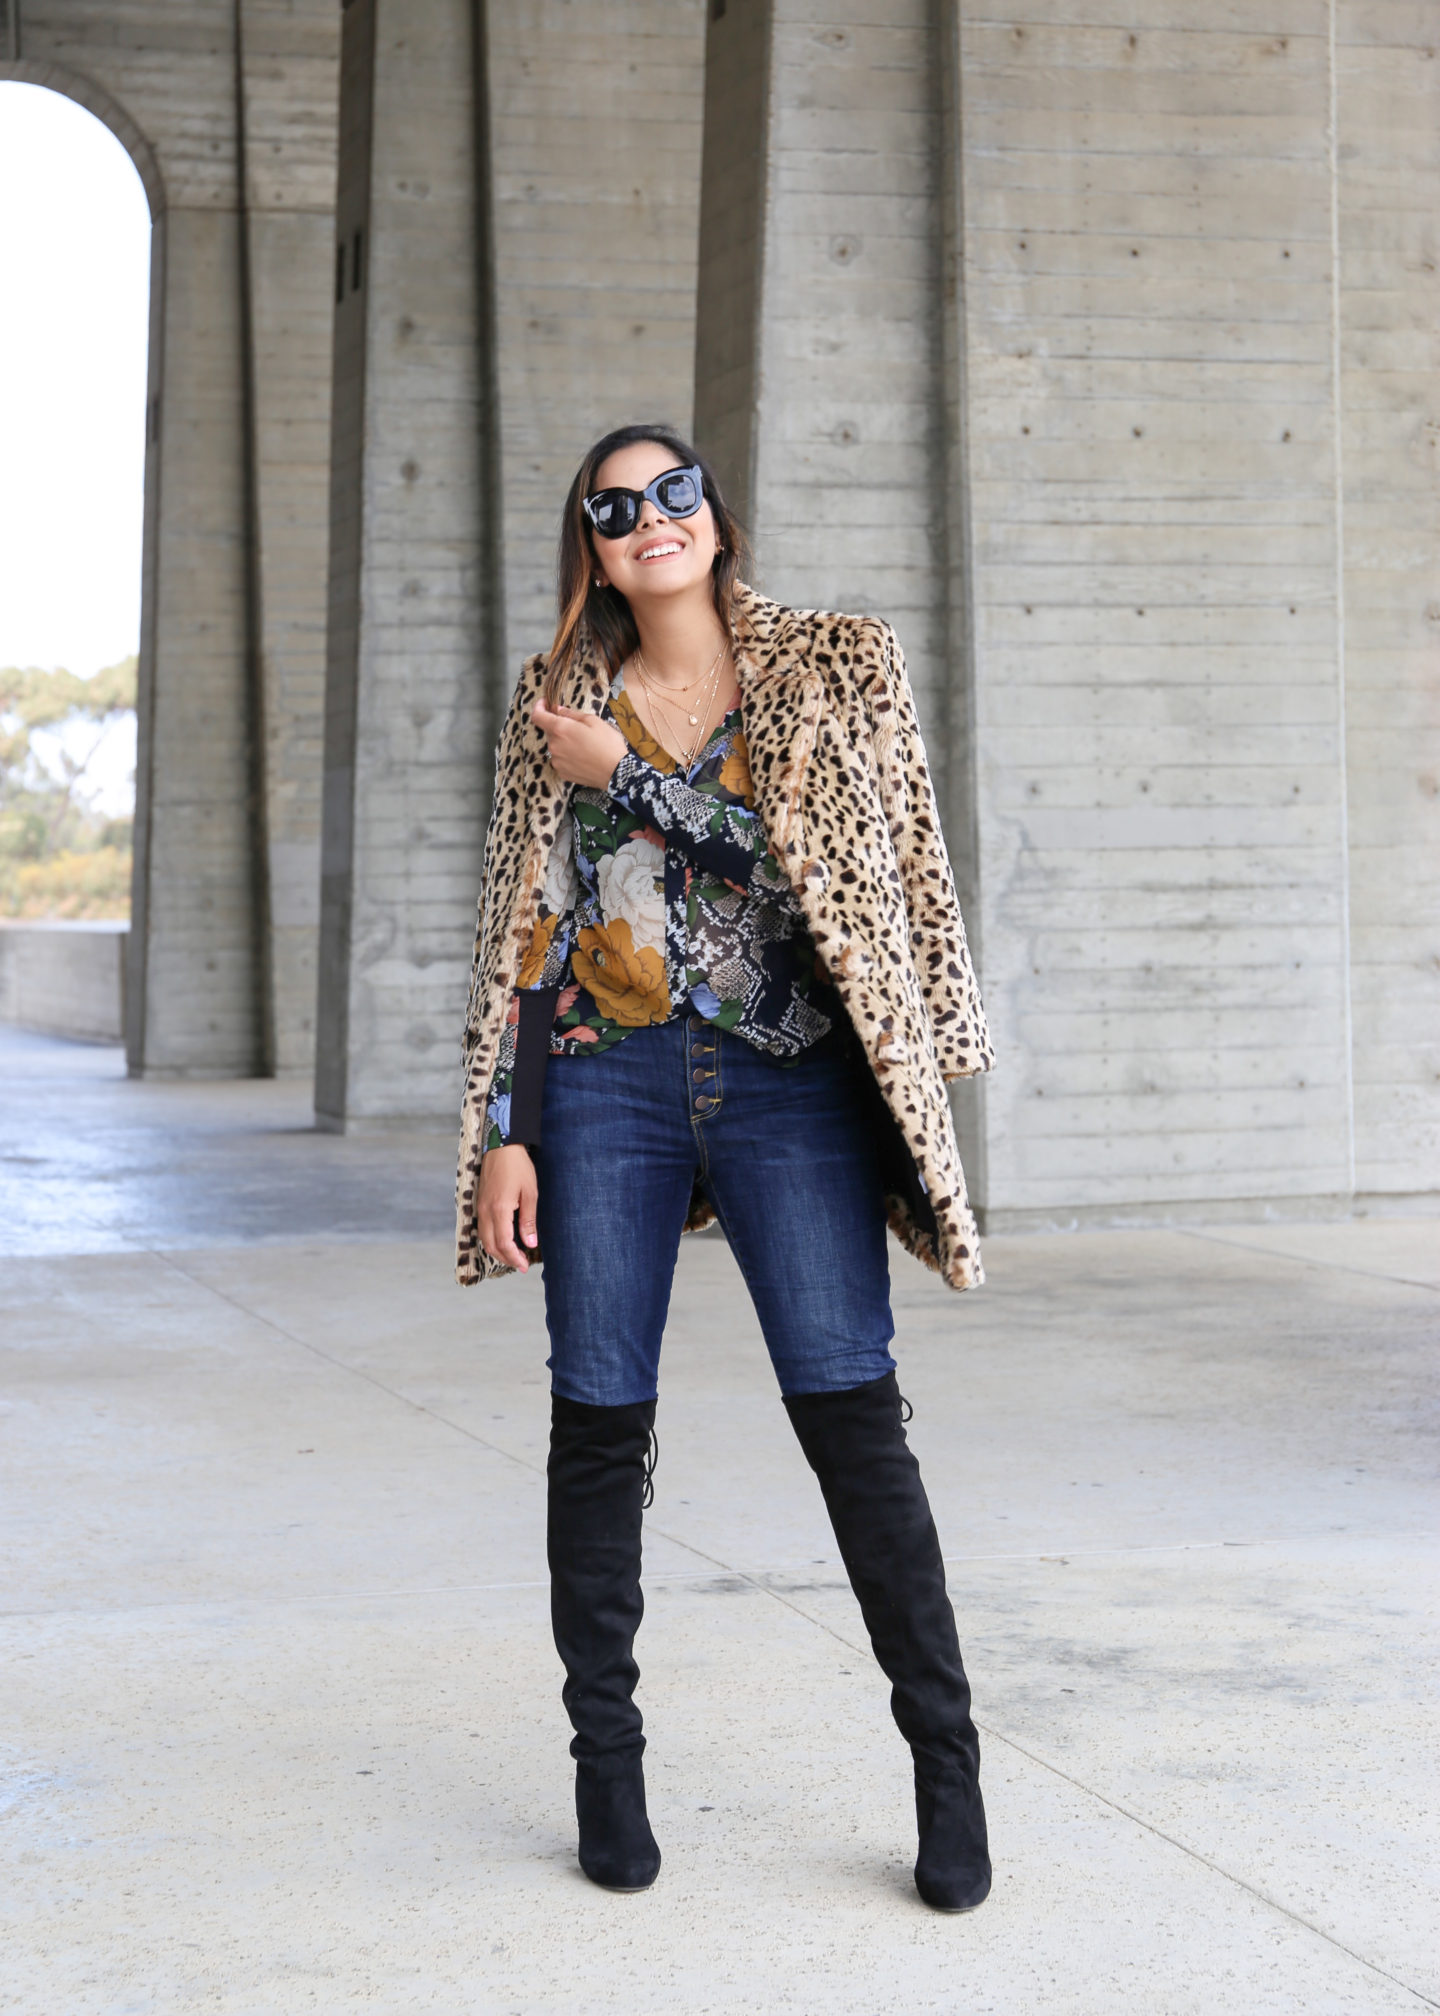 How to wear a faux fur leopard coat